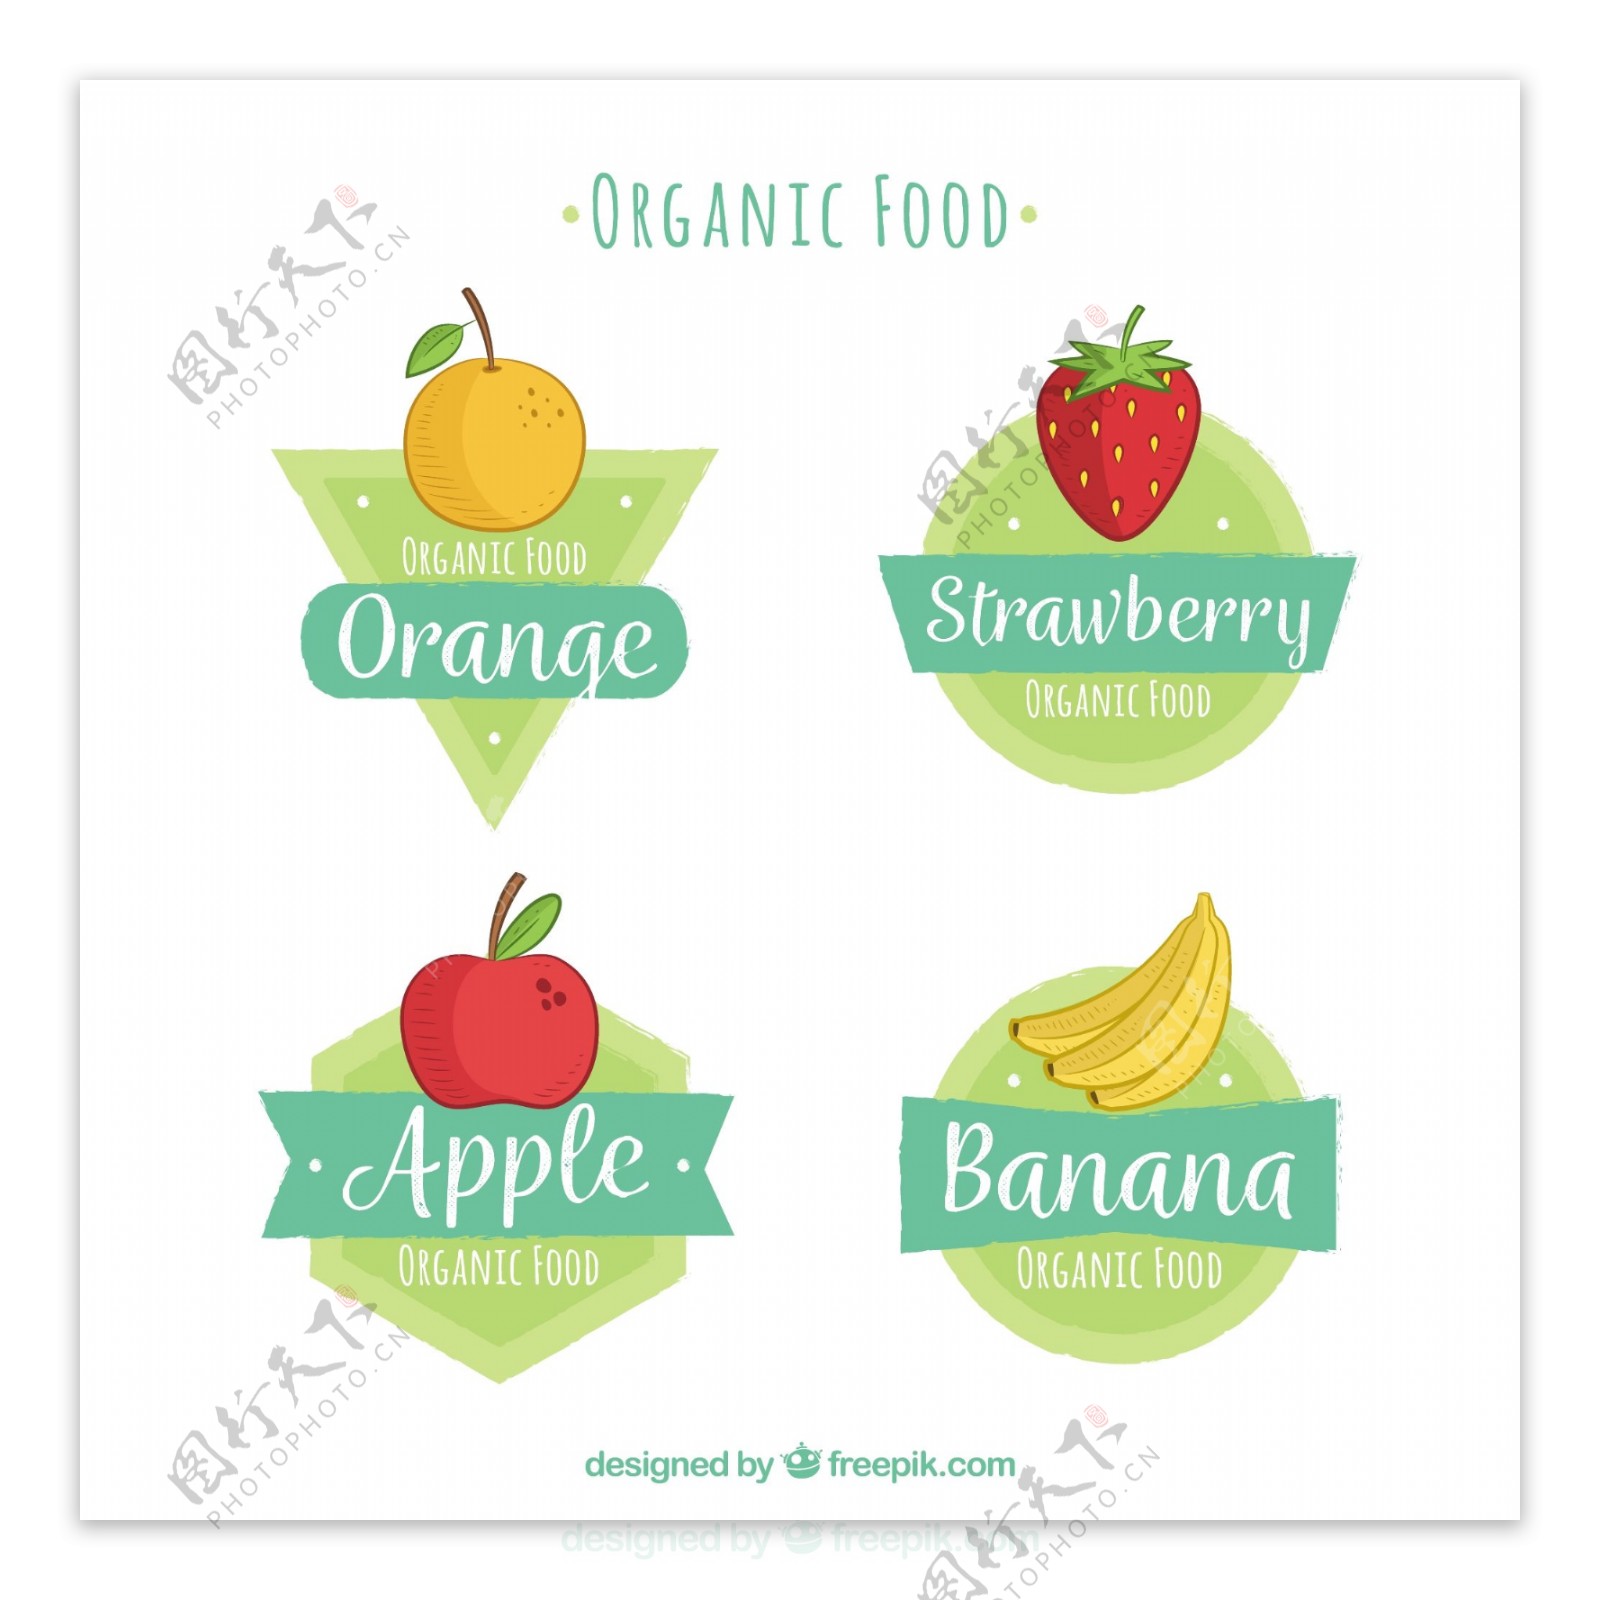 彩色手绘生态食品水果贴纸图标